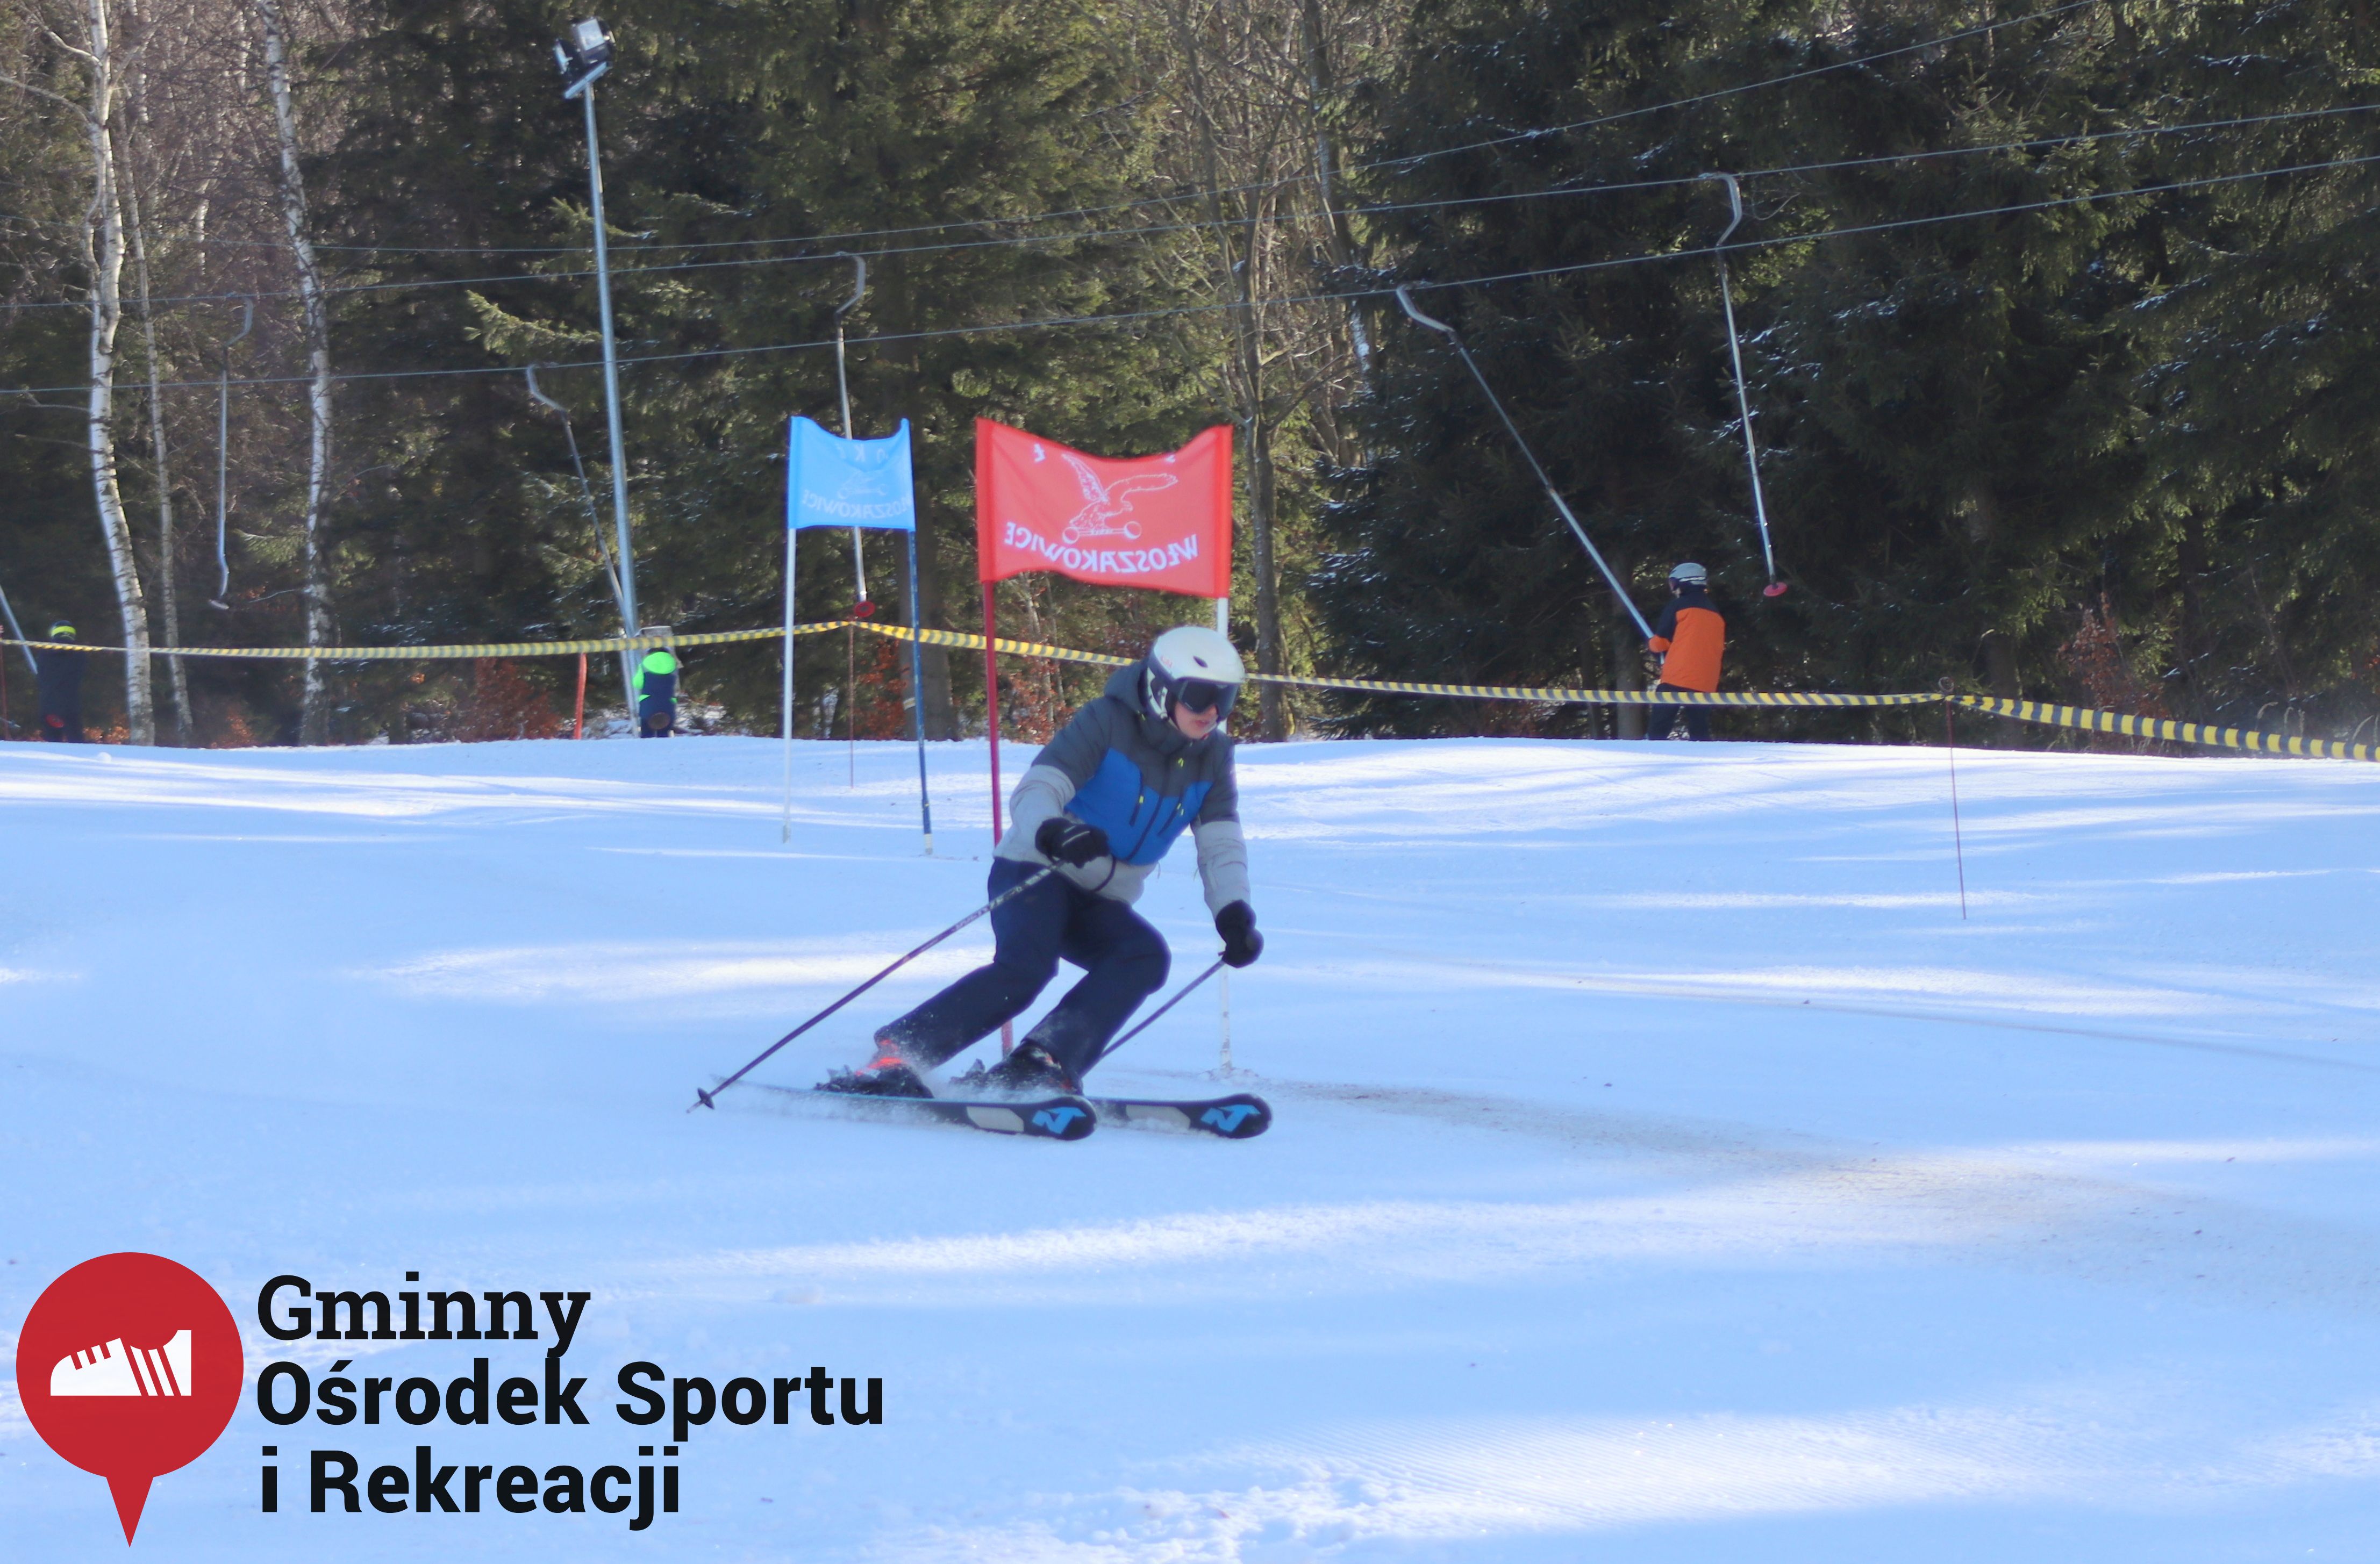 2022.02.12 - 18. Mistrzostwa Gminy Woszakowice w narciarstwie016.jpg - 1,10 MB